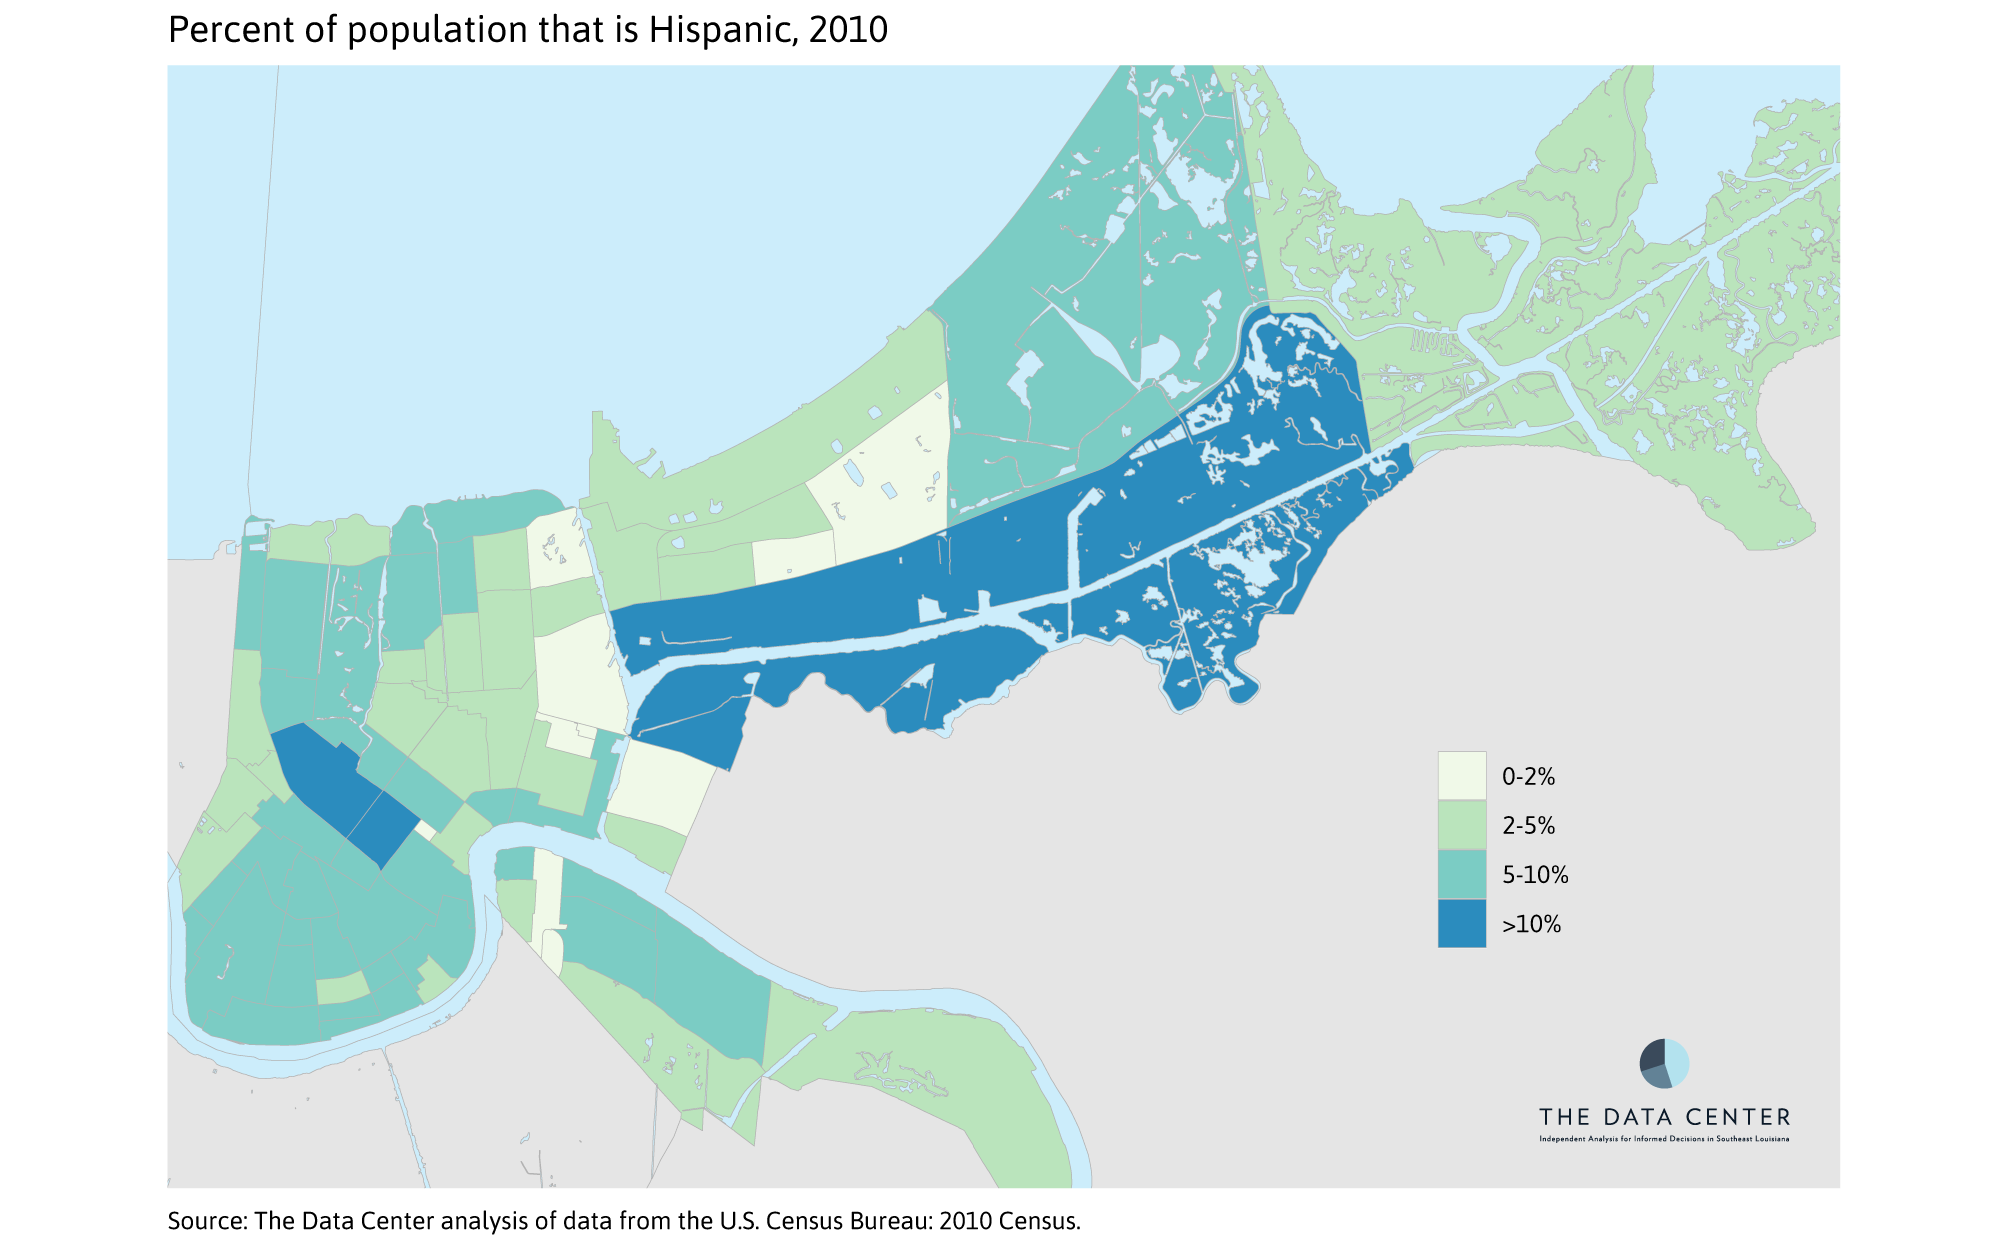 Percent Hispanic 2010